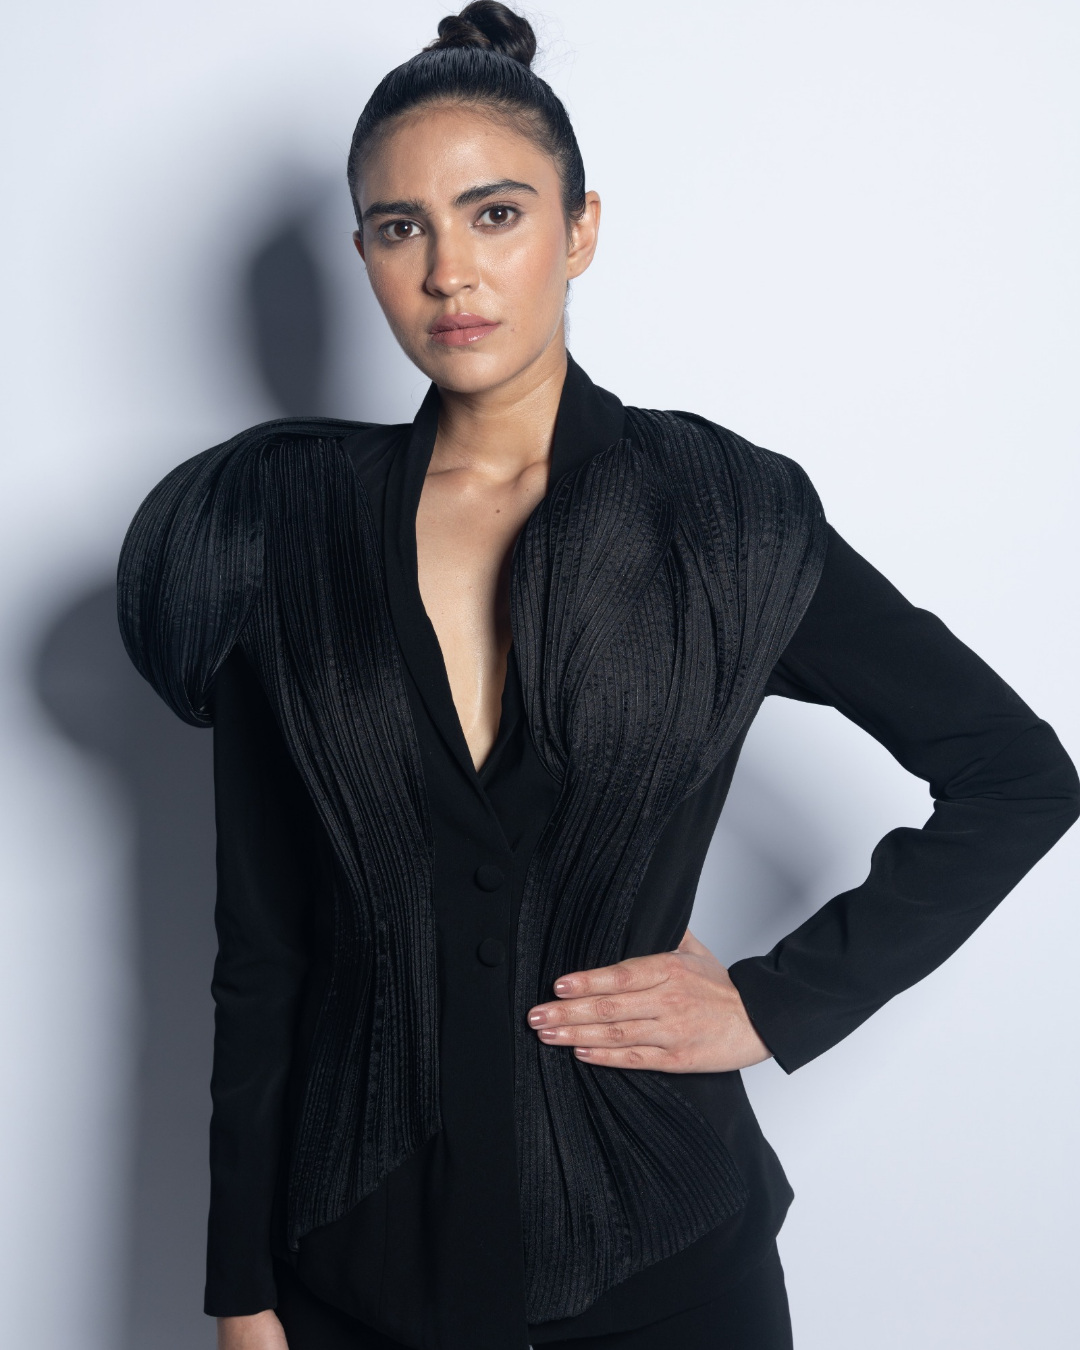 Sofia in black power shoulder pant suit